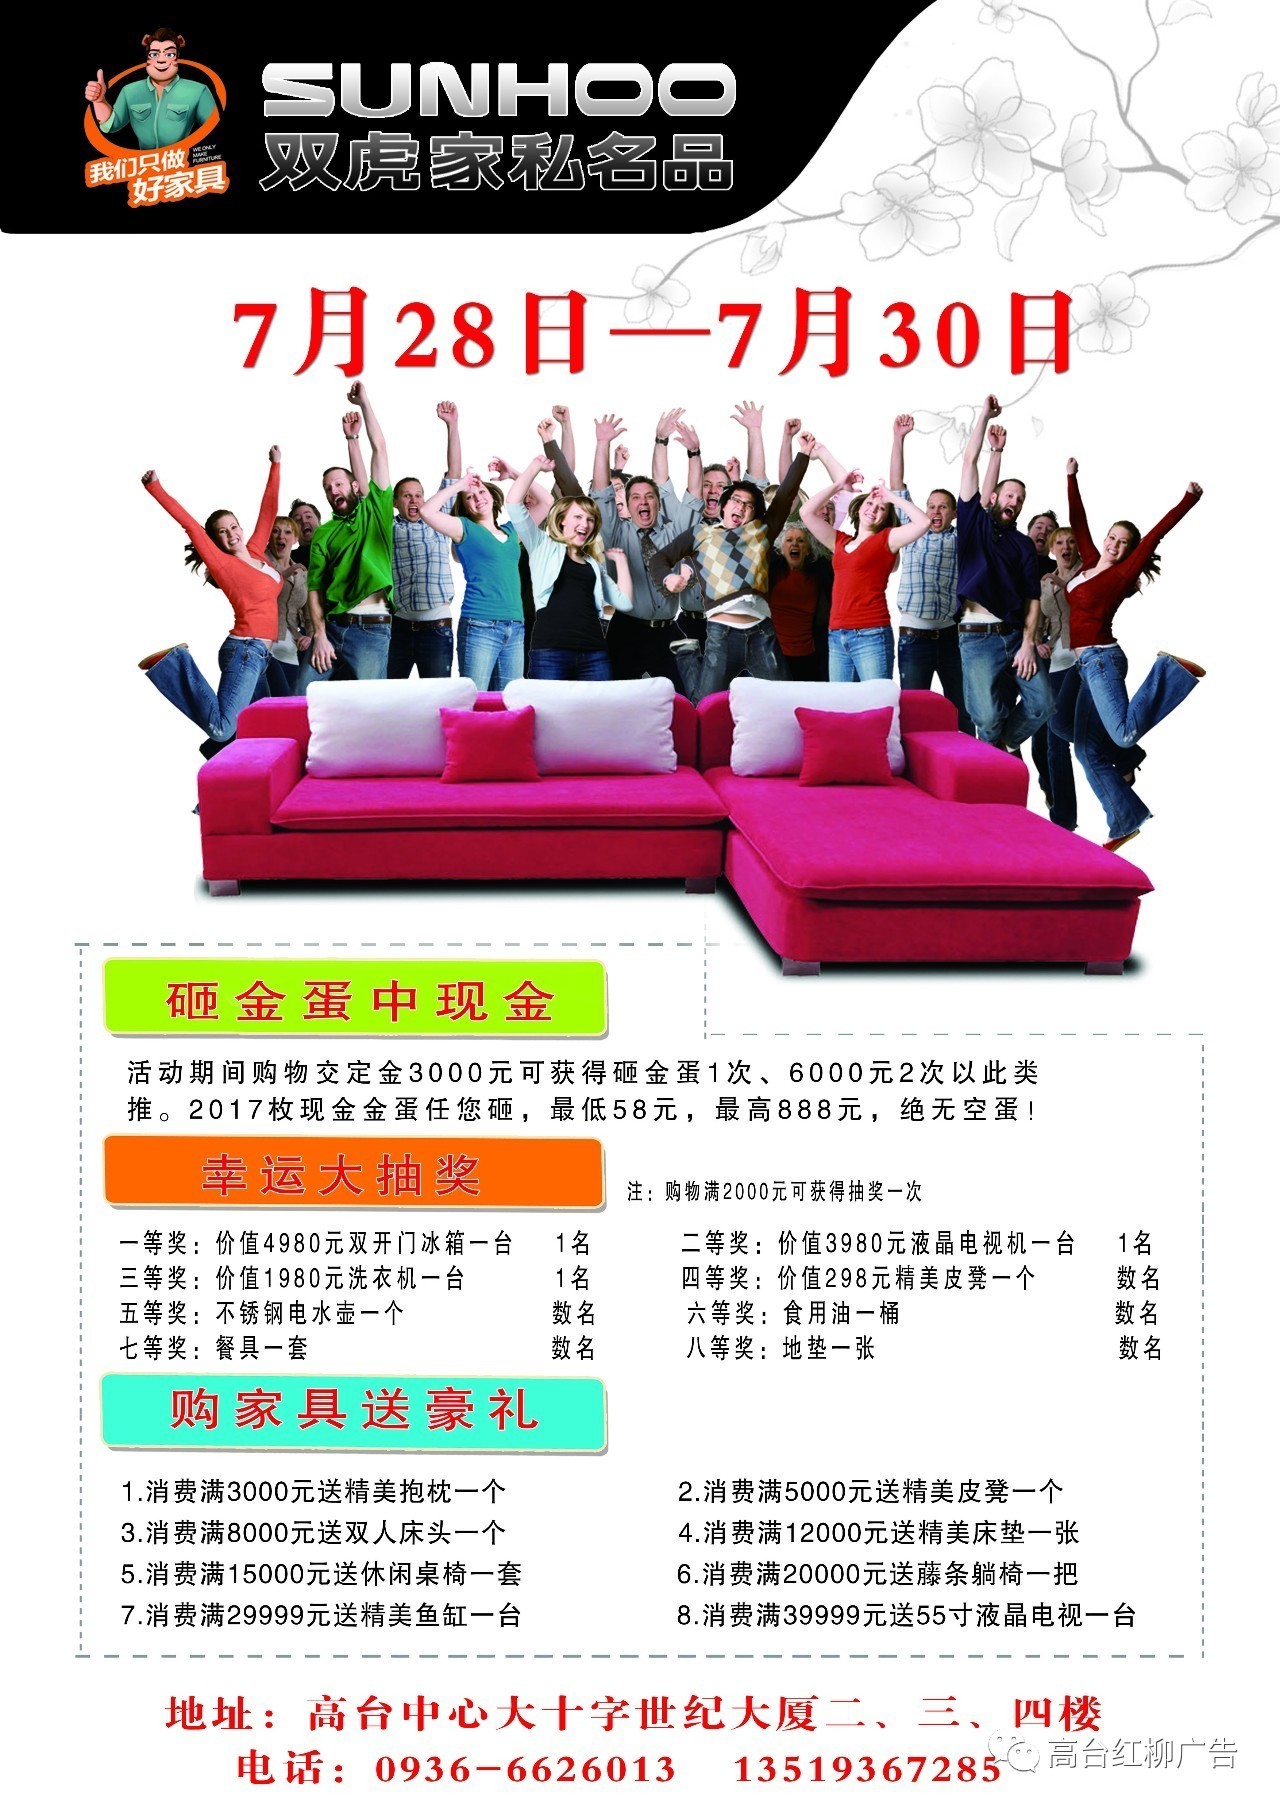 2017年7月26日高台红柳广告第105期彩板广告